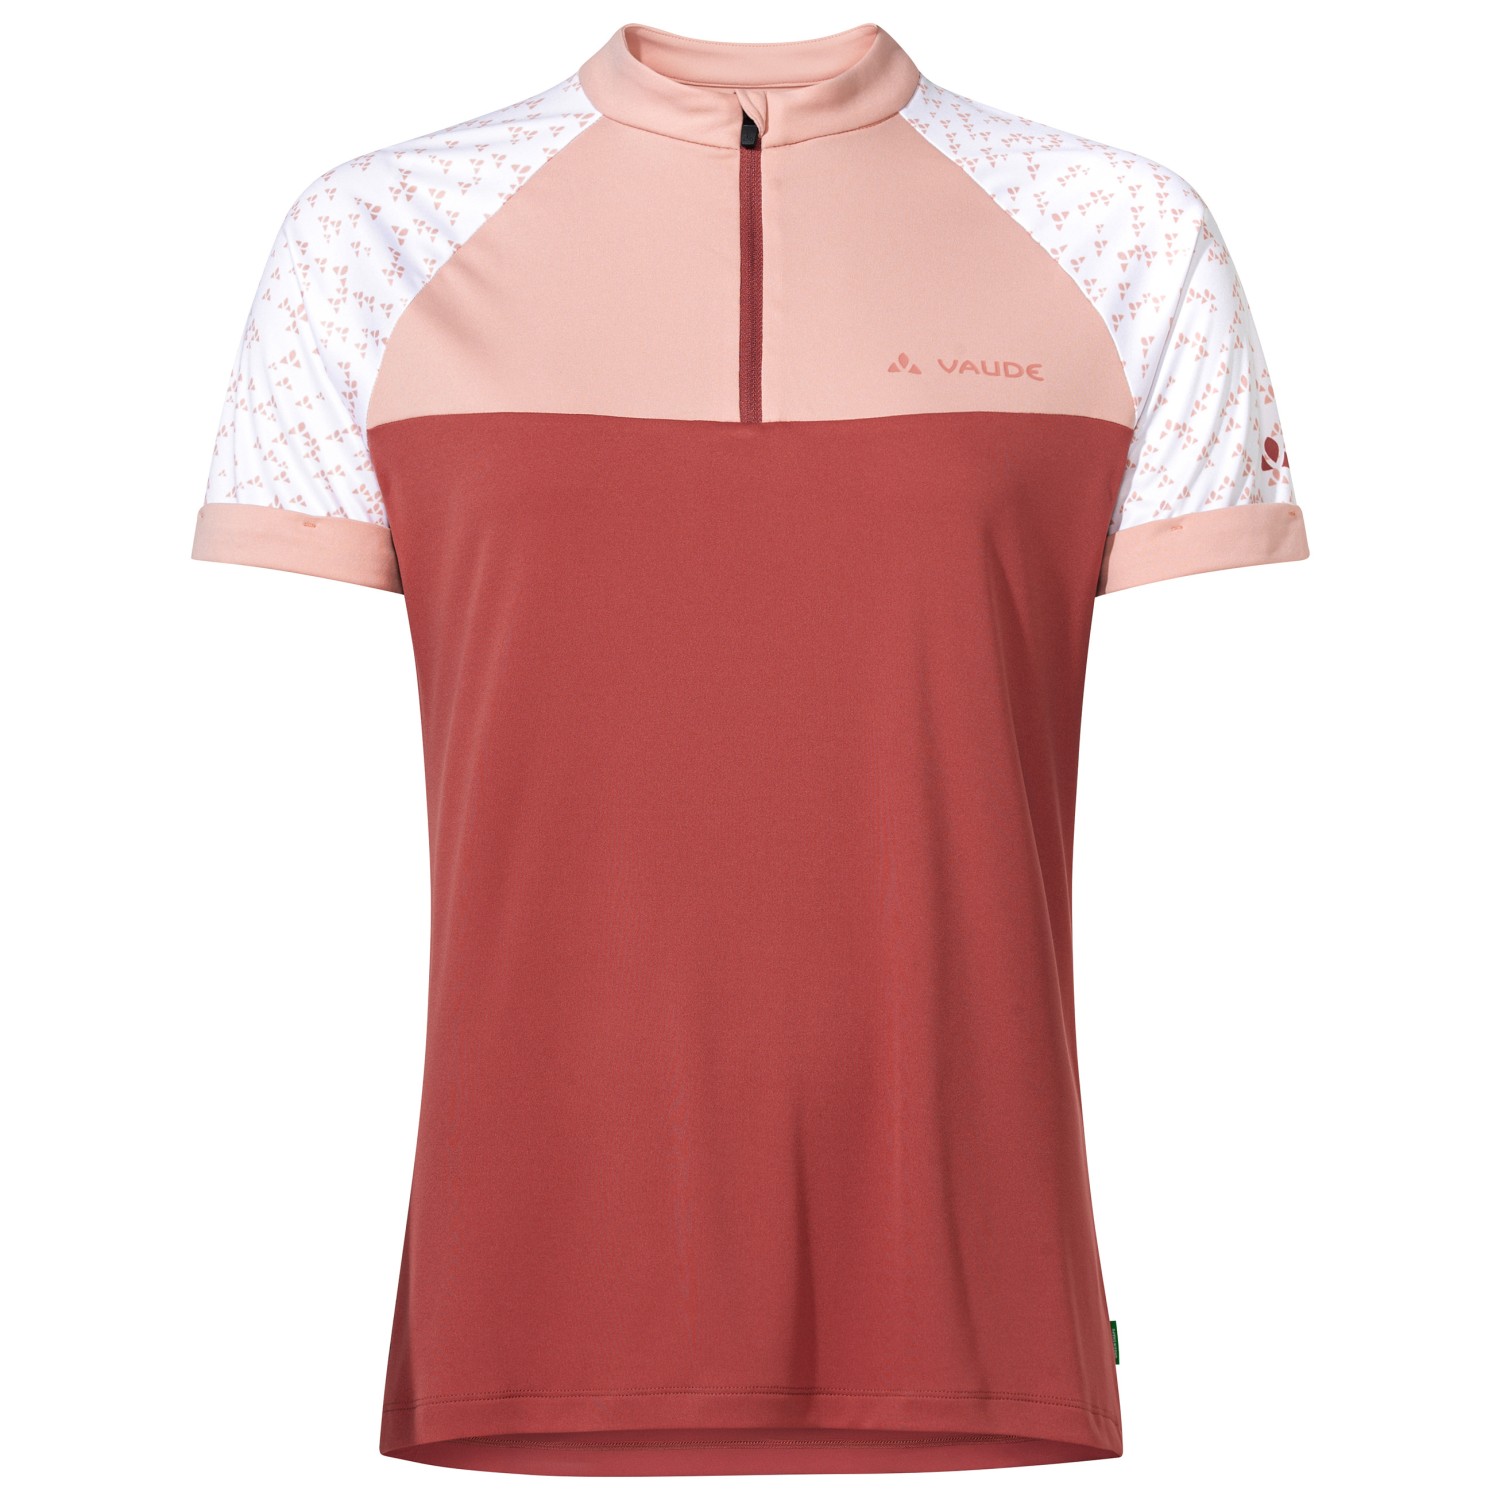 Велосипедный трикотаж Vaude Women's Ledro Print Shirt, цвет Brick велосипедный трикотаж vaude women s tremalzo l s shirt цвет brick